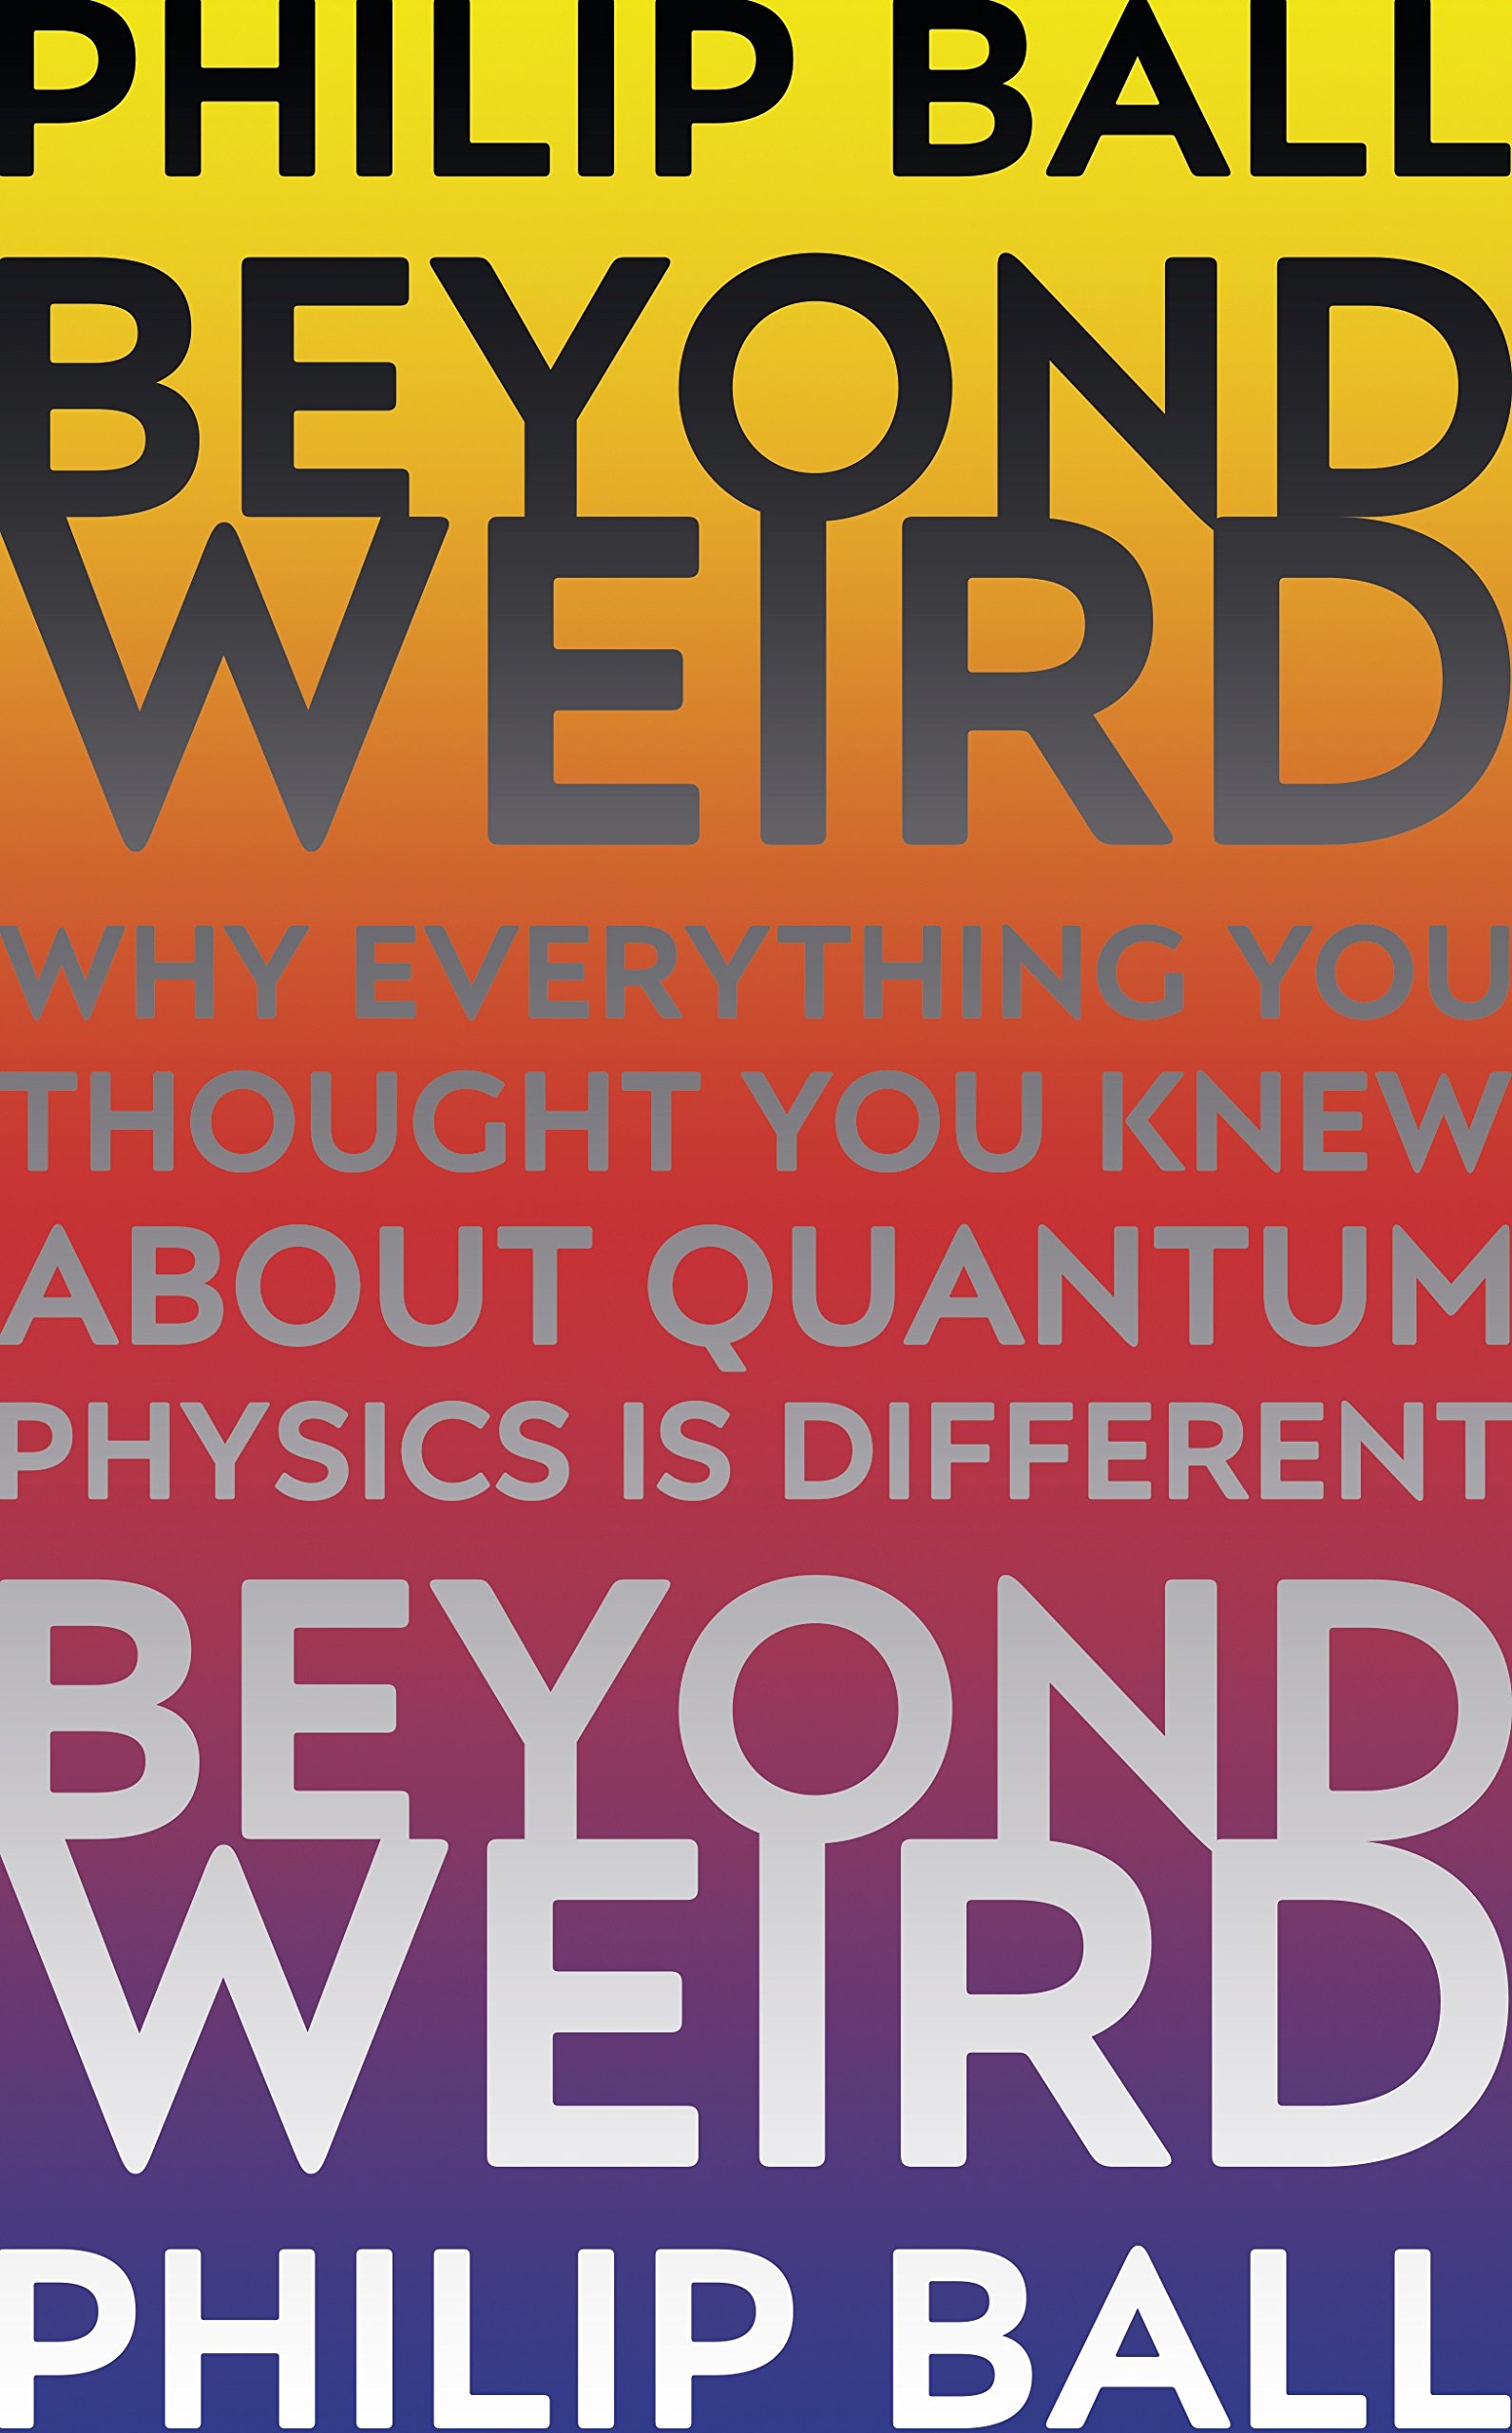 Beyond Weird | Philip Ball image